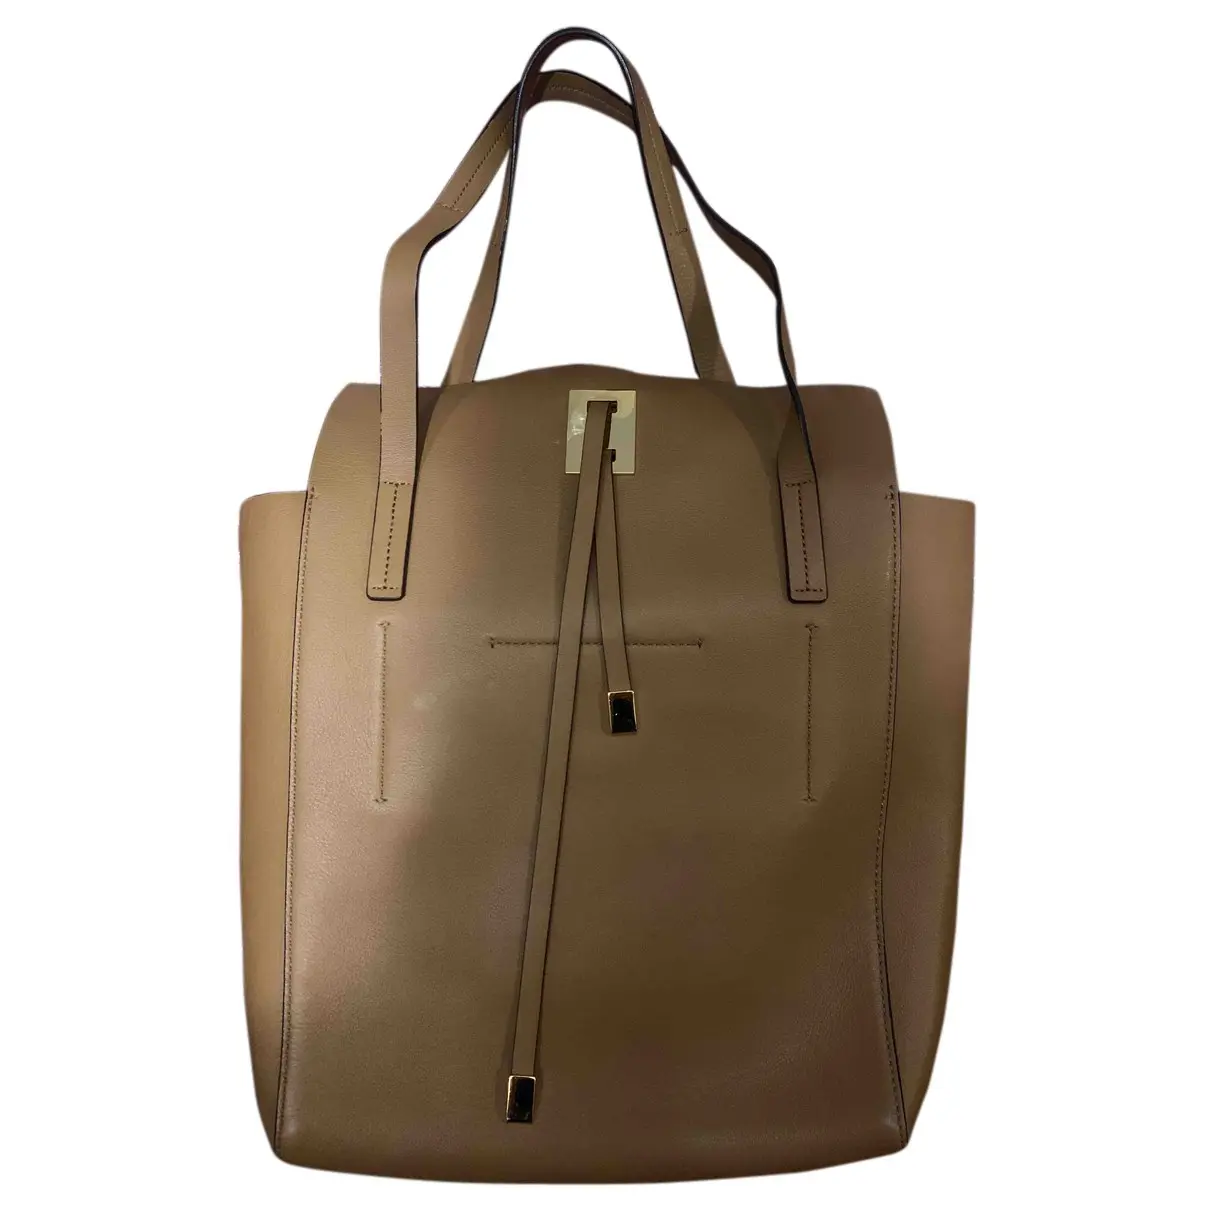 Miranda (Collection) leather handbag Michael Kors